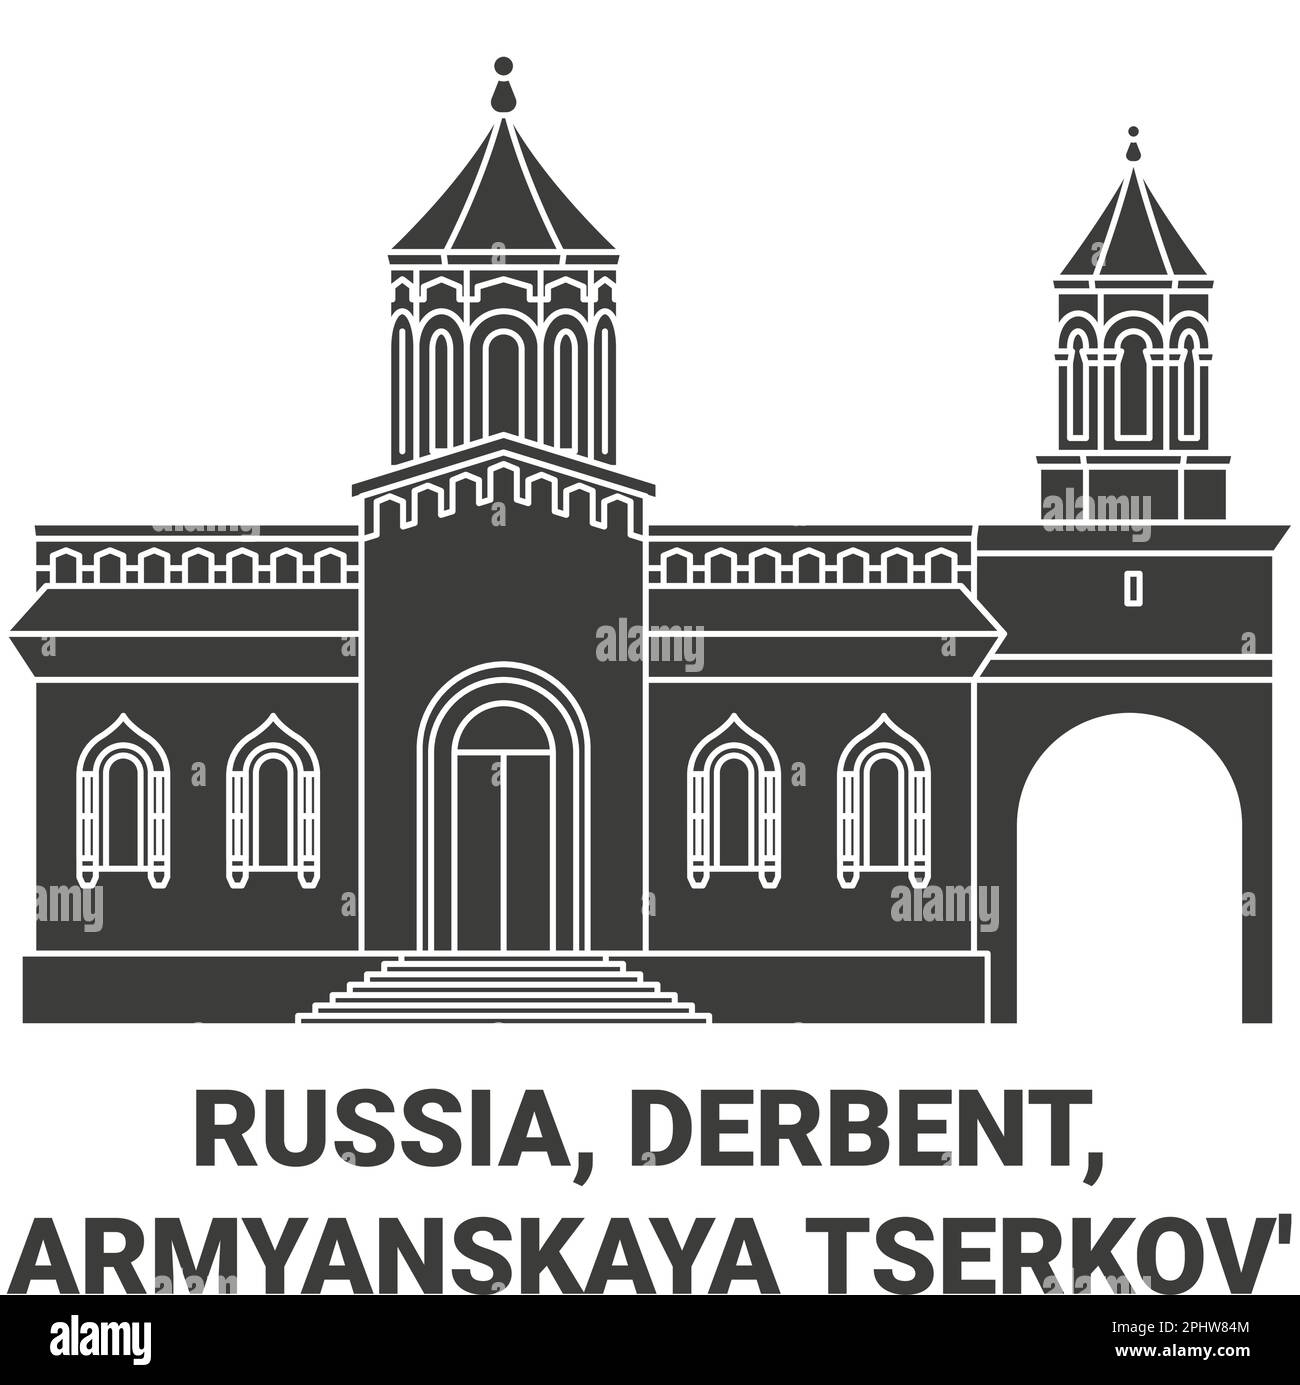 Russia, Derbent, Armyanskaya Tserkov' travel landmark vector illustration Stock Vector